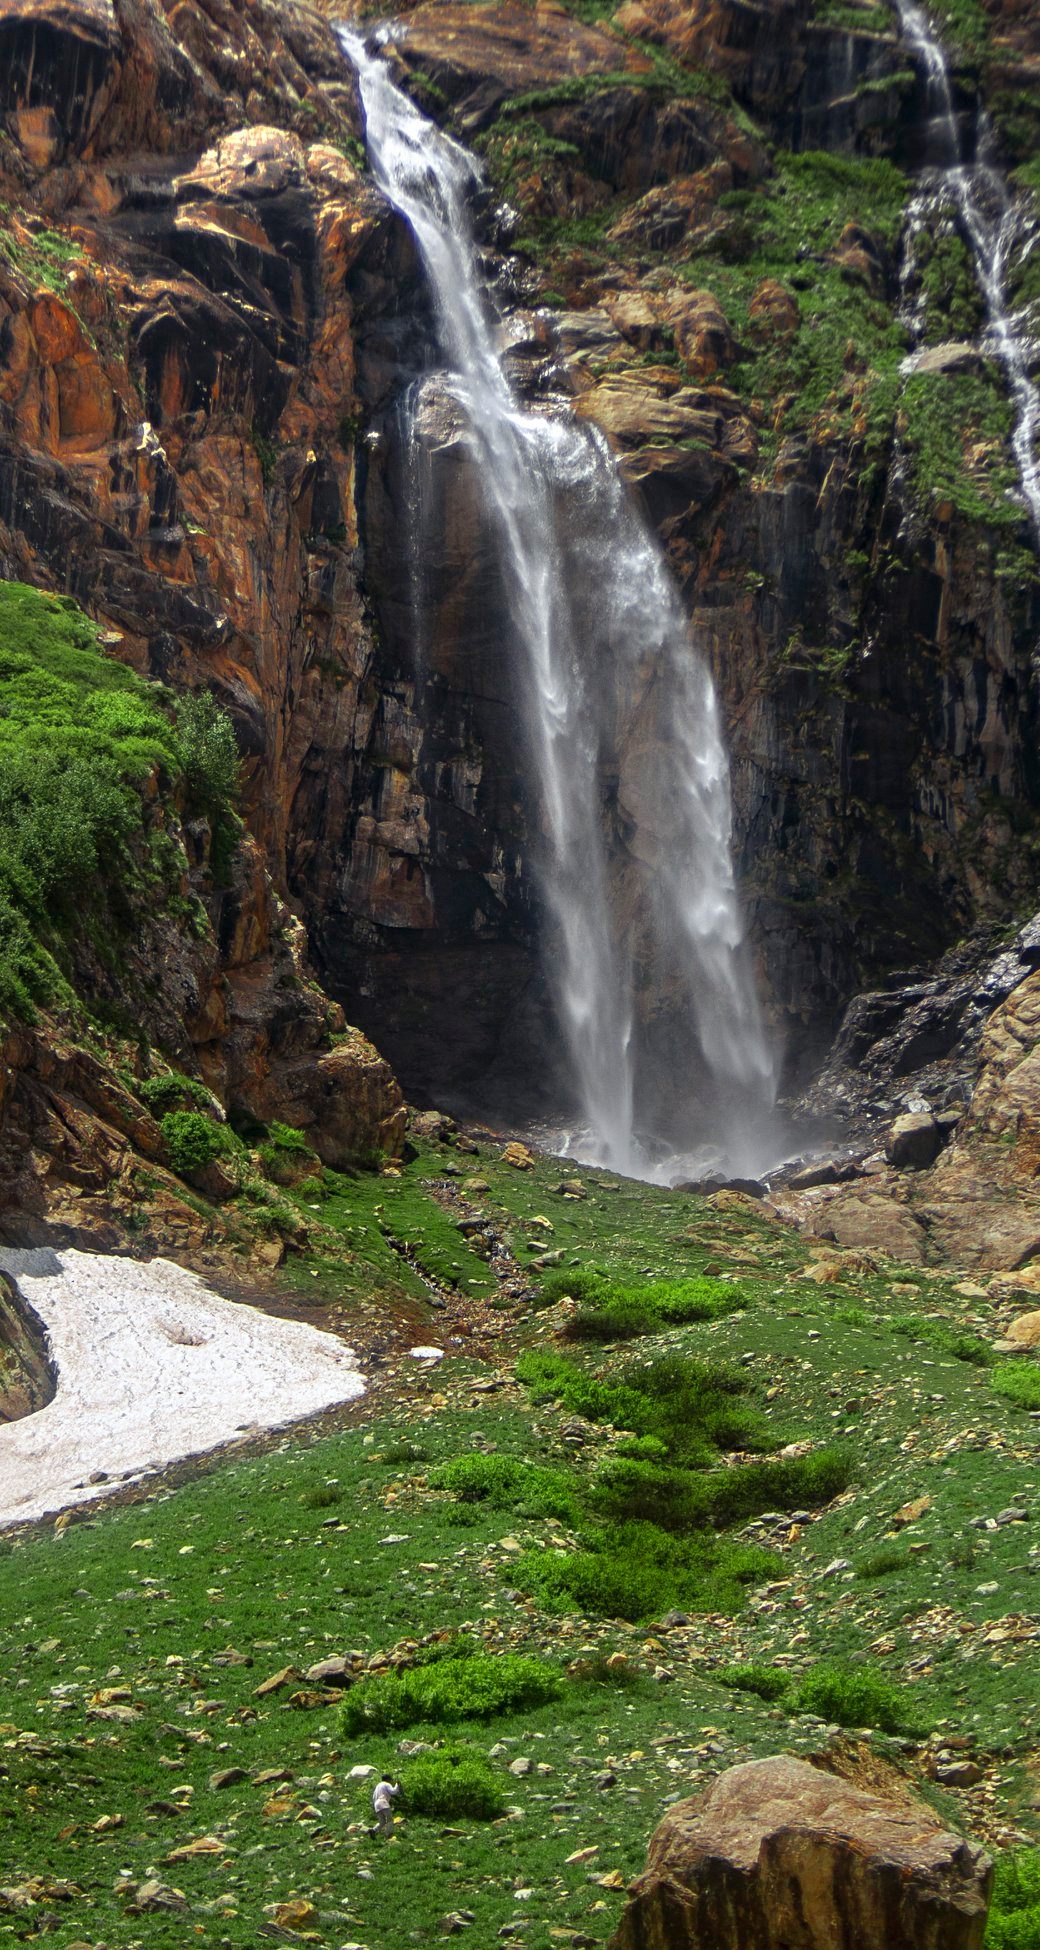 Kanali waterfall. Higest waterfall in Neelum valley. Lawat valley. series of 4 waterfalls one is biggest in the picture Kanali waterfall Lawat Neelum valley